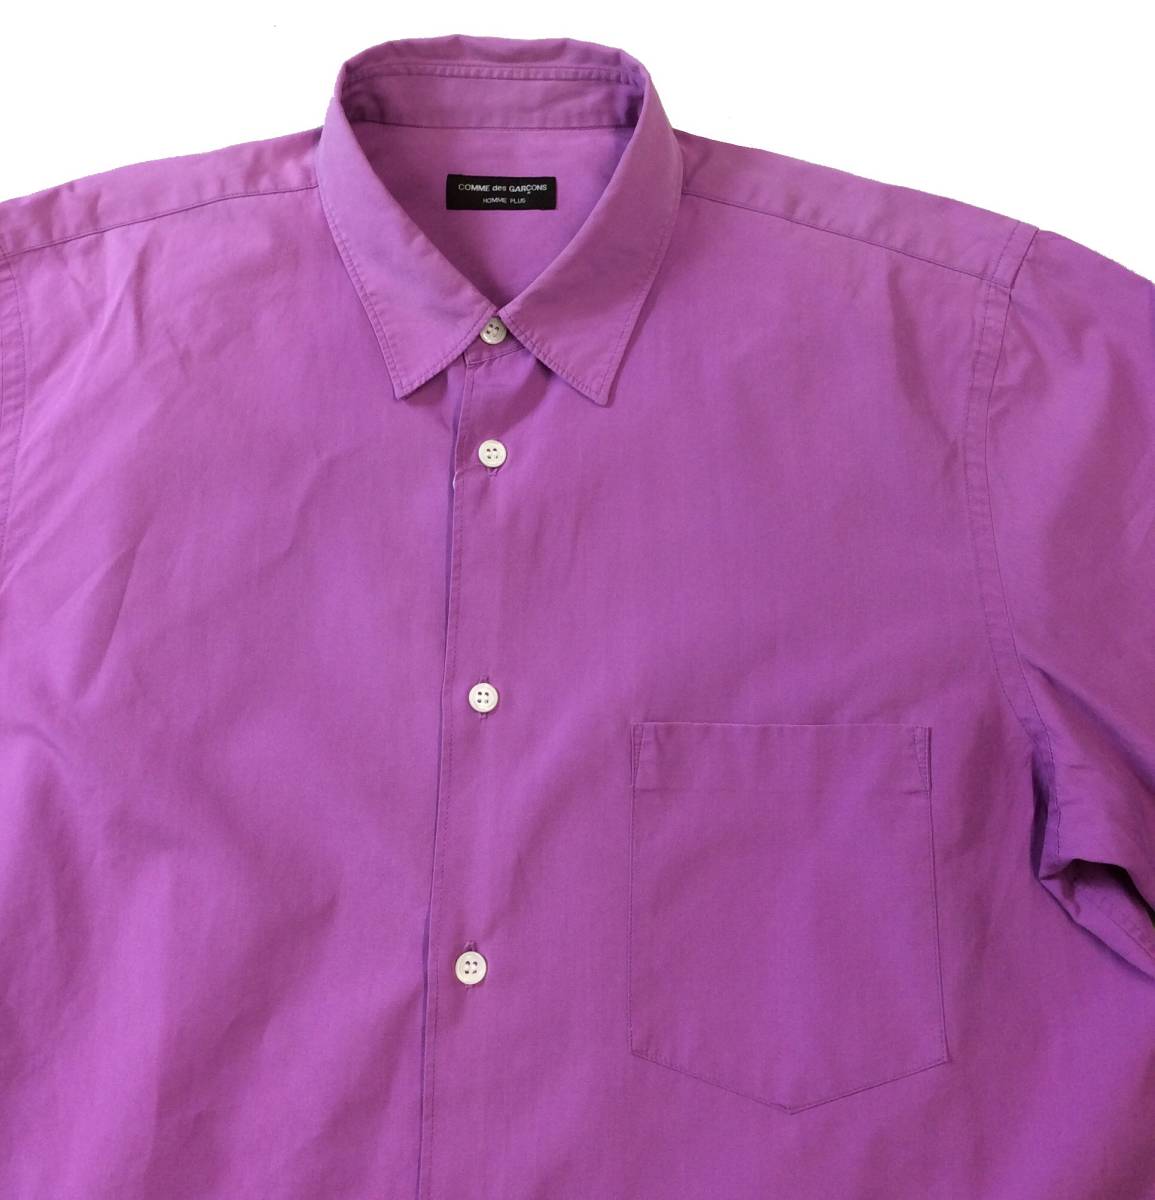 COMME des GARCONS HOME PLUS Comme des Garcons Homme pryus long sleeve shirt purple purple postage 250 jpy (ma)